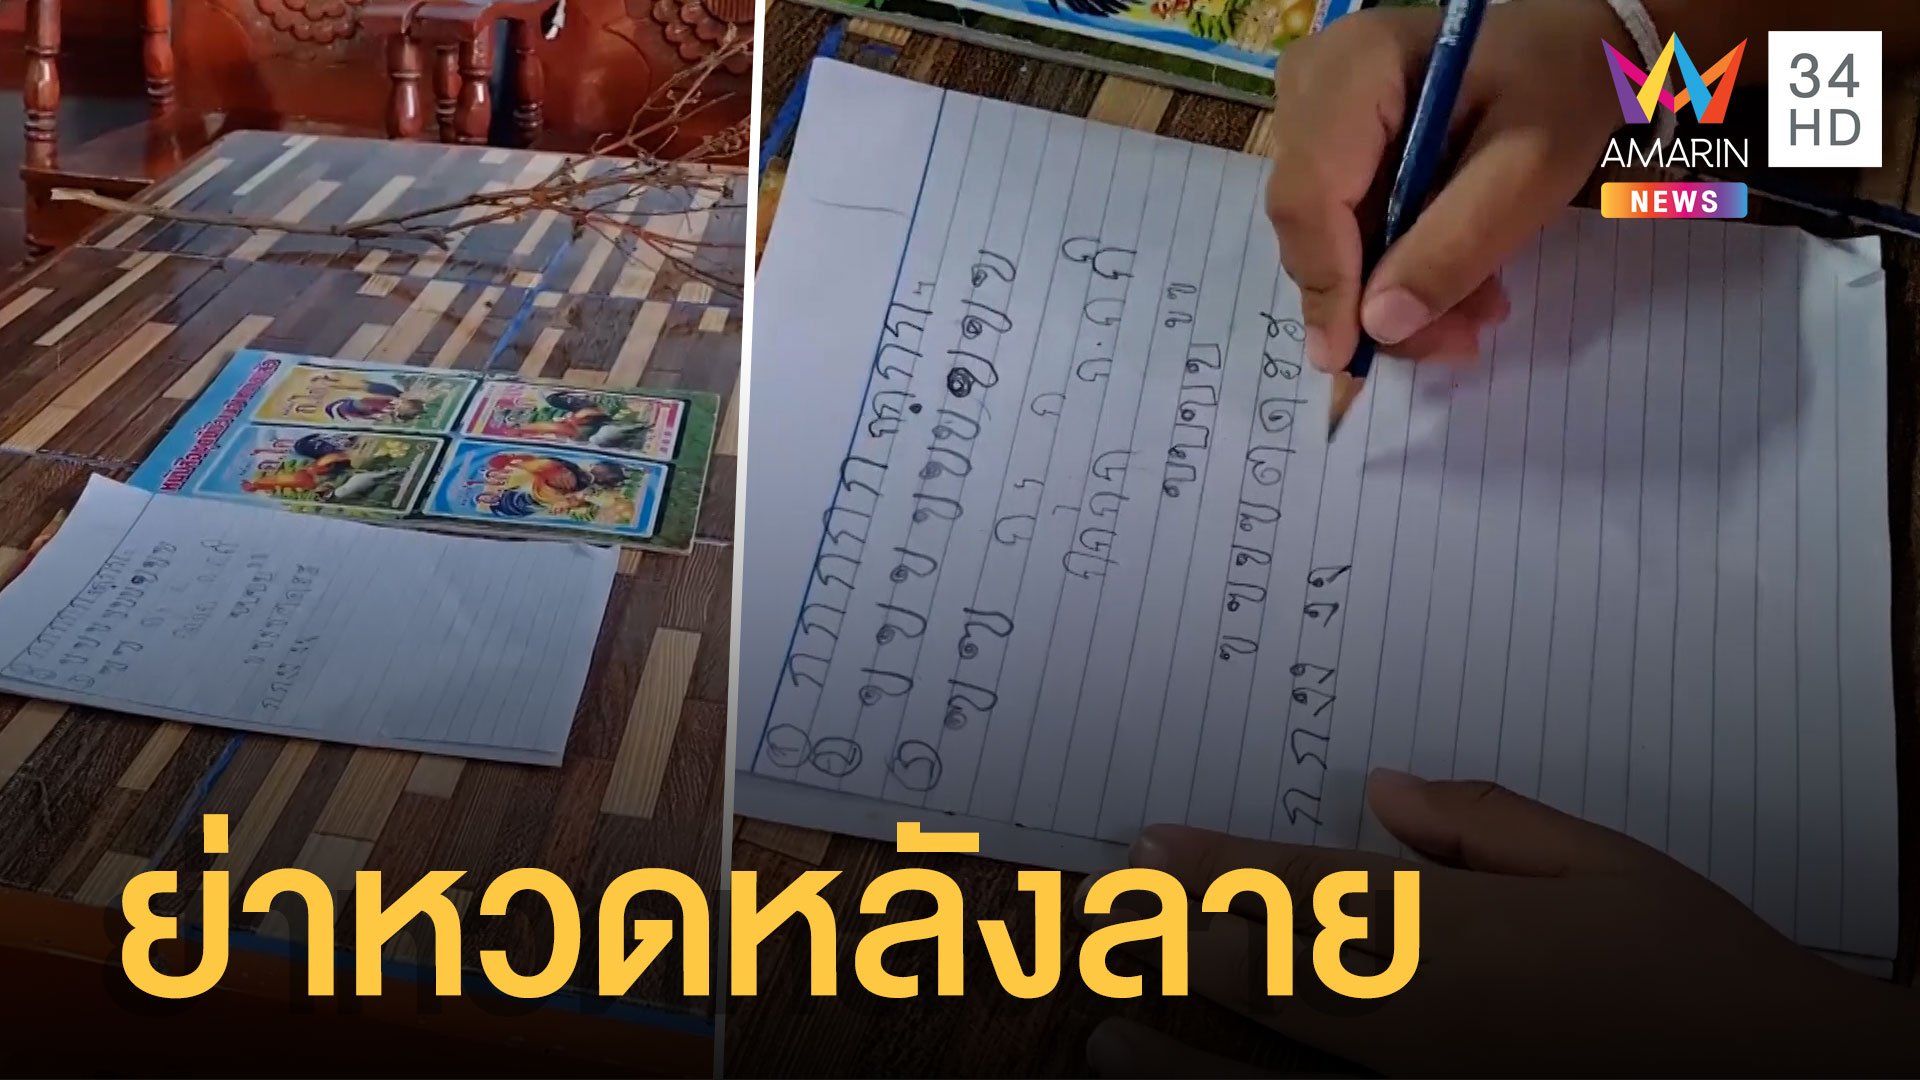 เด็ก 5 ขวบเขียน ก.ไก่ ไม่ได้ ย่าหวดหลังลาย | ข่าวเที่ยงอมรินทร์ | 4 เม.ย. 65 | AMARIN TVHD34